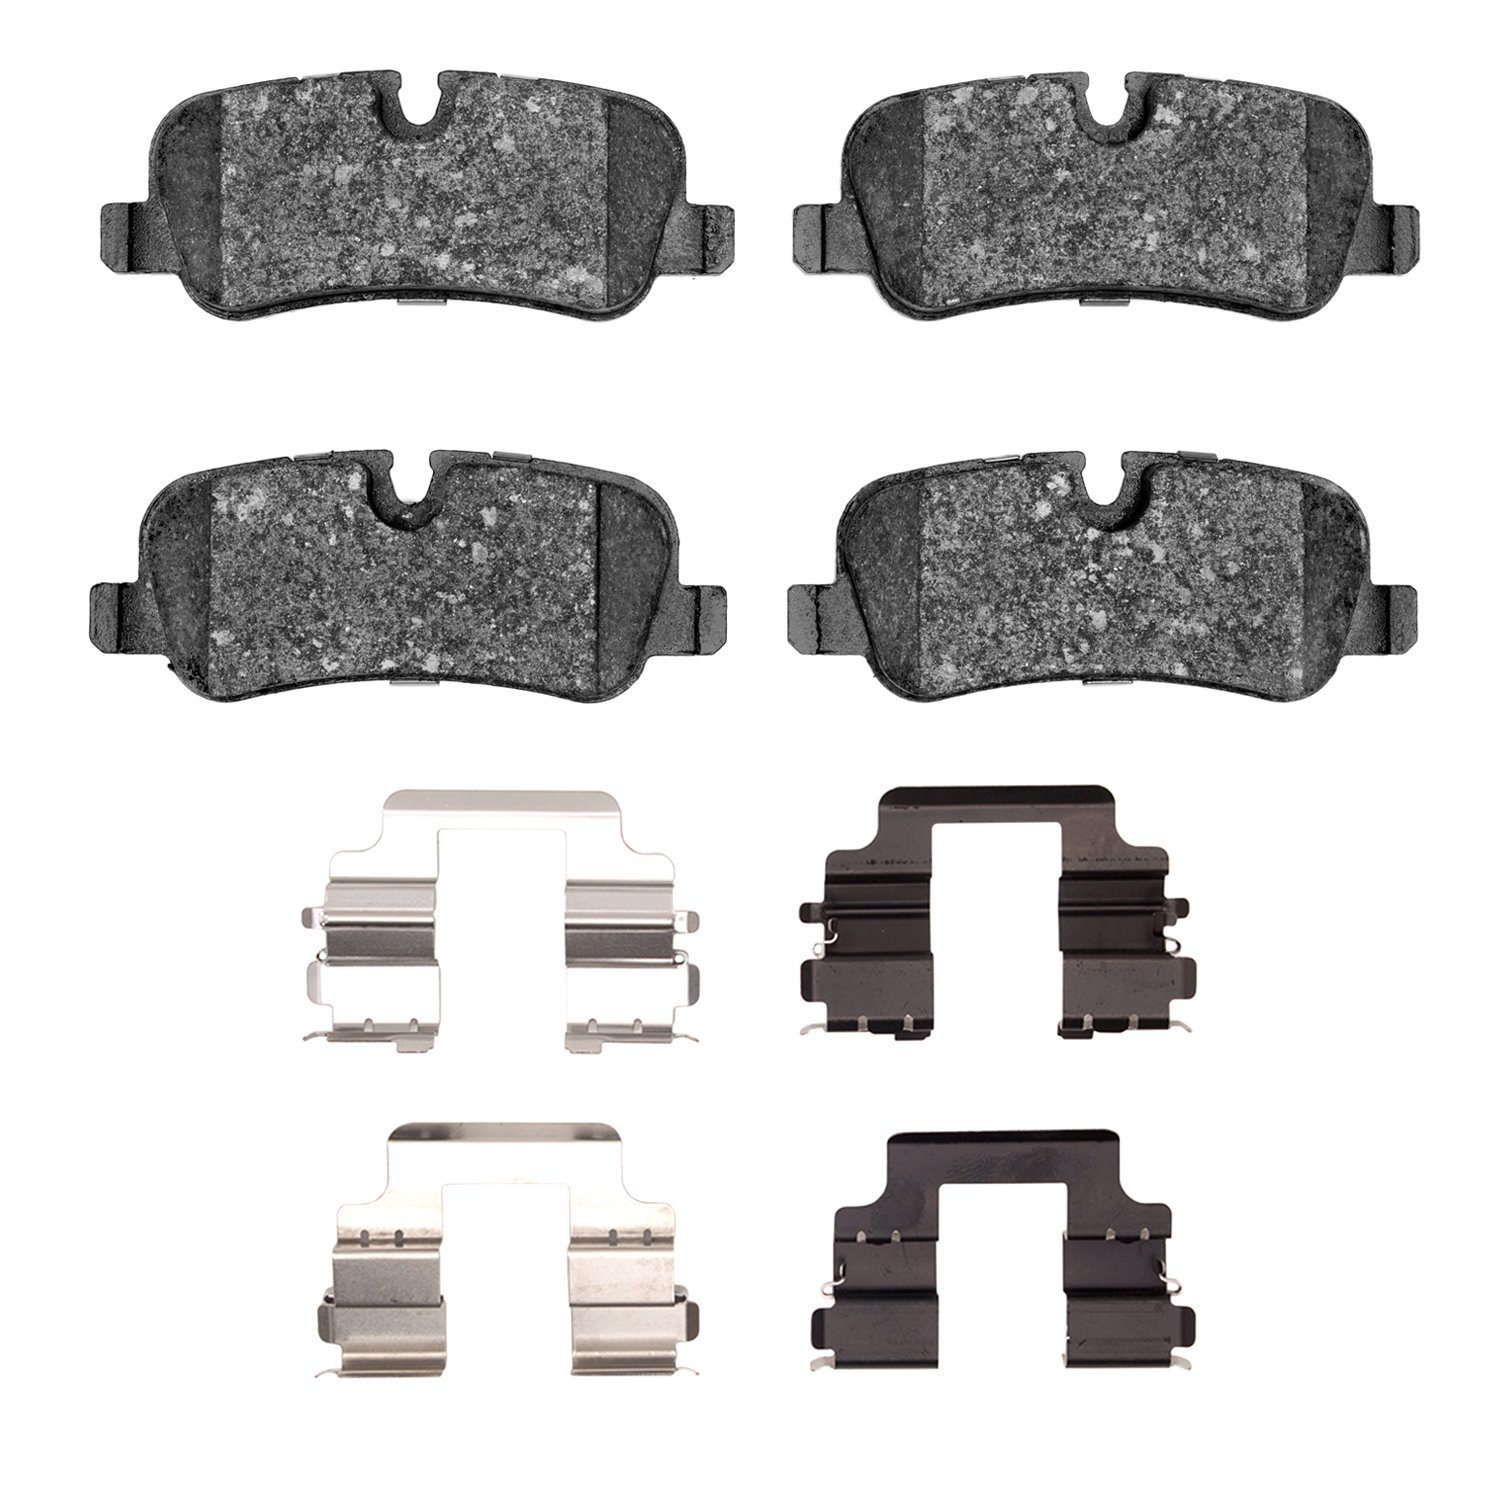 1600-1099-01 5000 Euro Ceramic Brake Pads & Hardware Kit, 2010-2013 Land Rover, Position: Rear